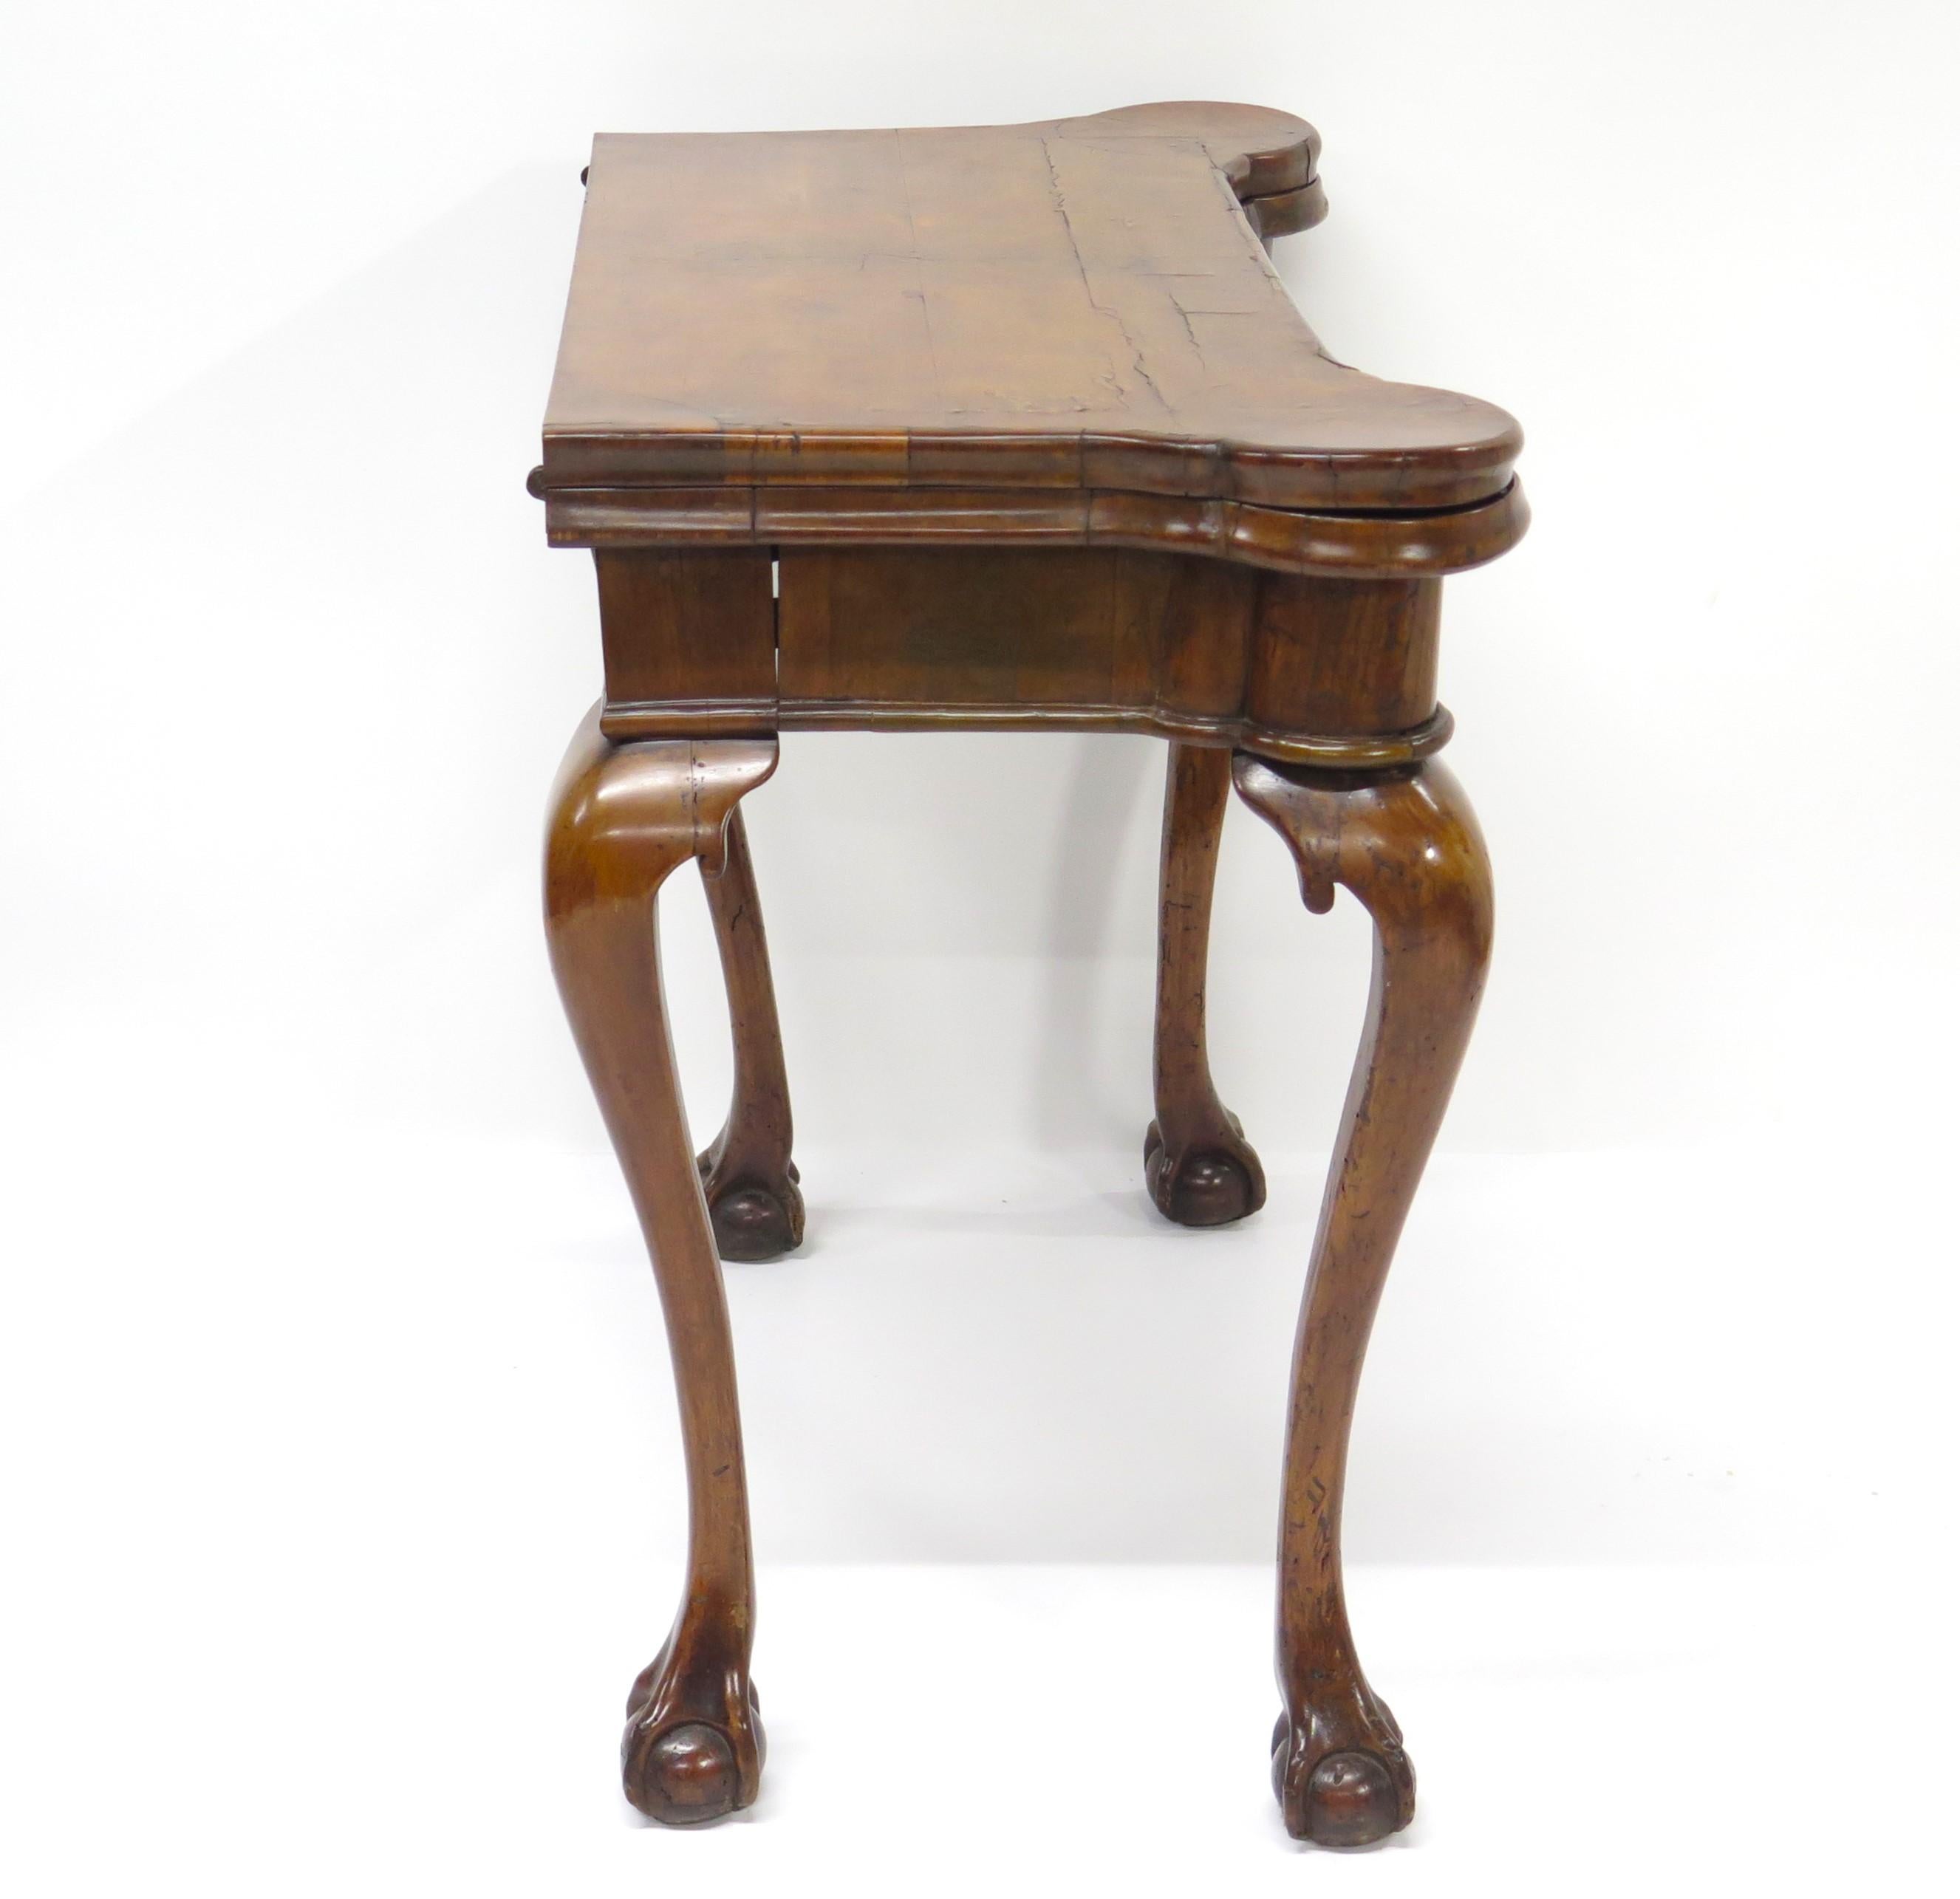 Table à jeux et à cartes en noyer sculpté de style George II, qui sert également de table d'appoint lorsqu'elle n'est pas utilisée. La partie supérieure en forme de Foldes s'ouvre pour révéler une surface de jeu tapissée de balisage avec des